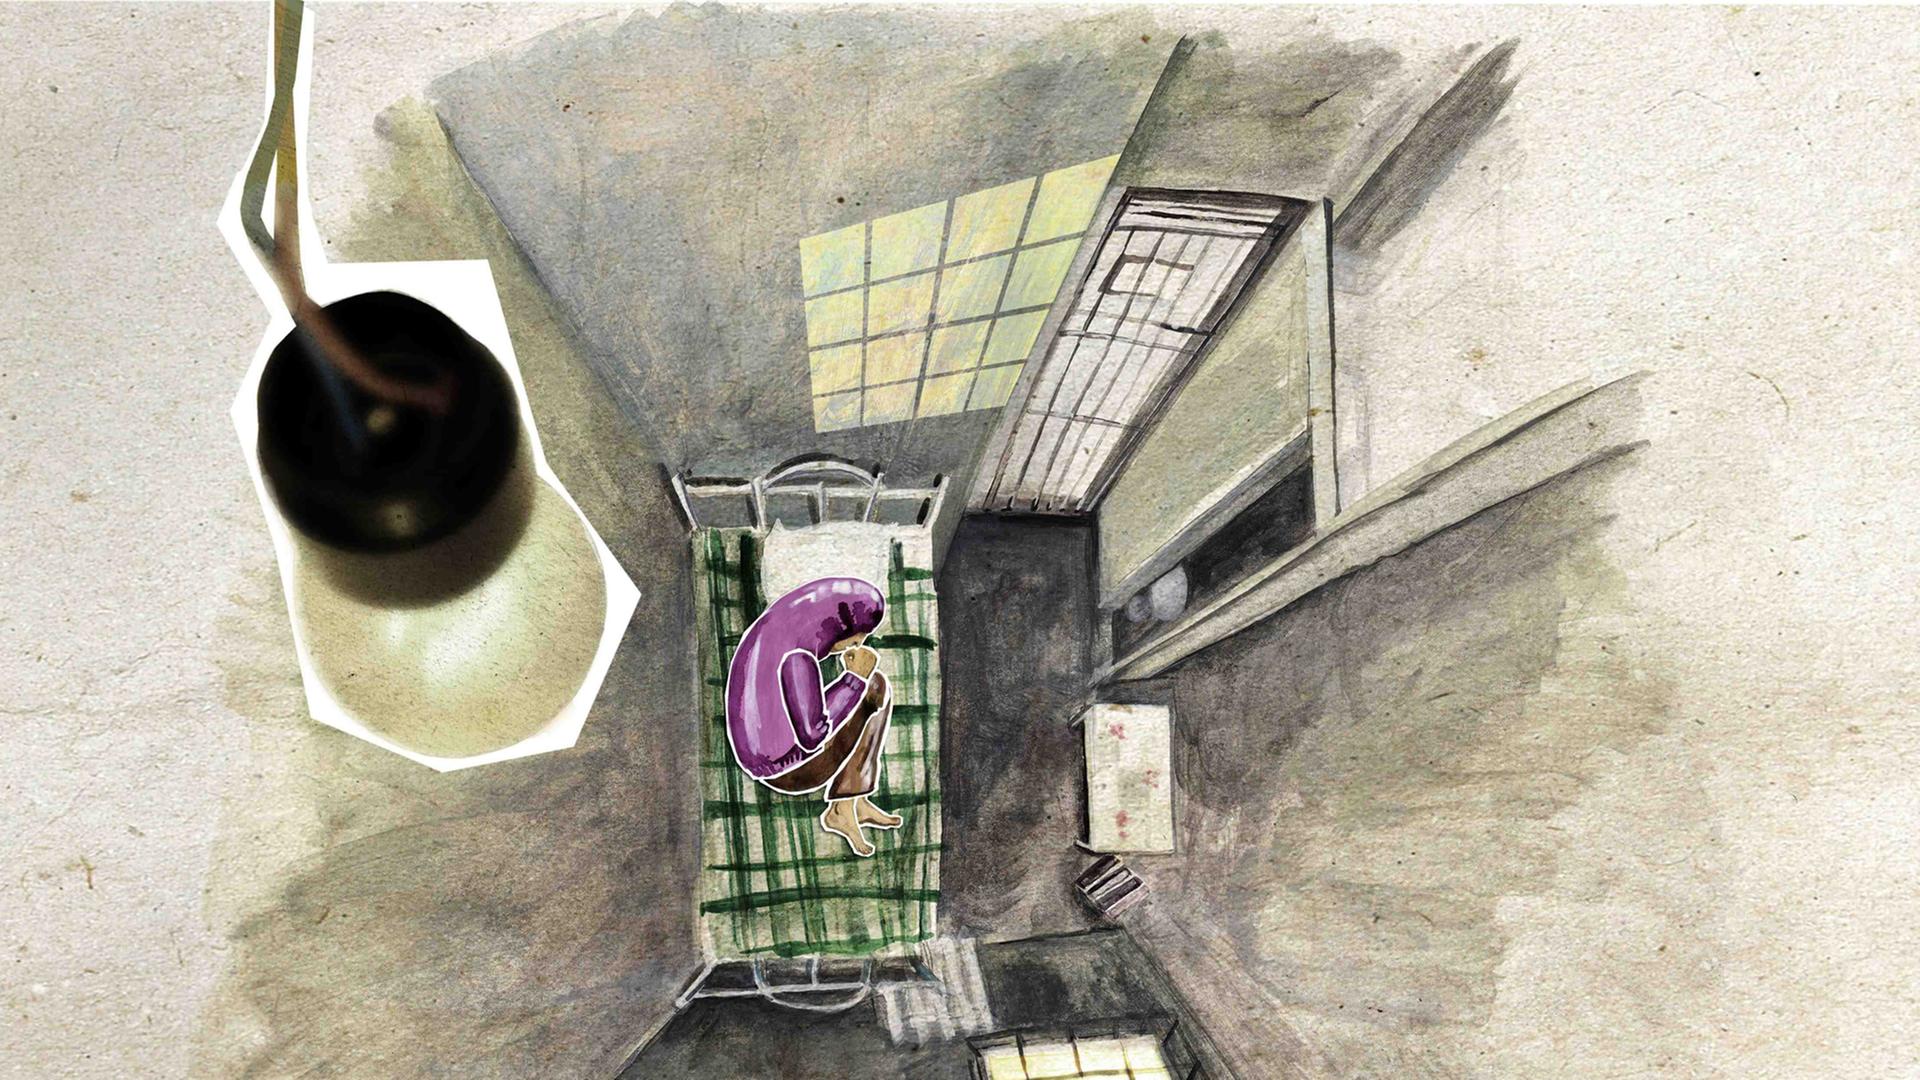 Szene aus dem Animationsfilm "Crulic - Weg ins Jenseits". Das Bild zeigt von oben einen Menschen auf einer Gefängnispritsche liegend.